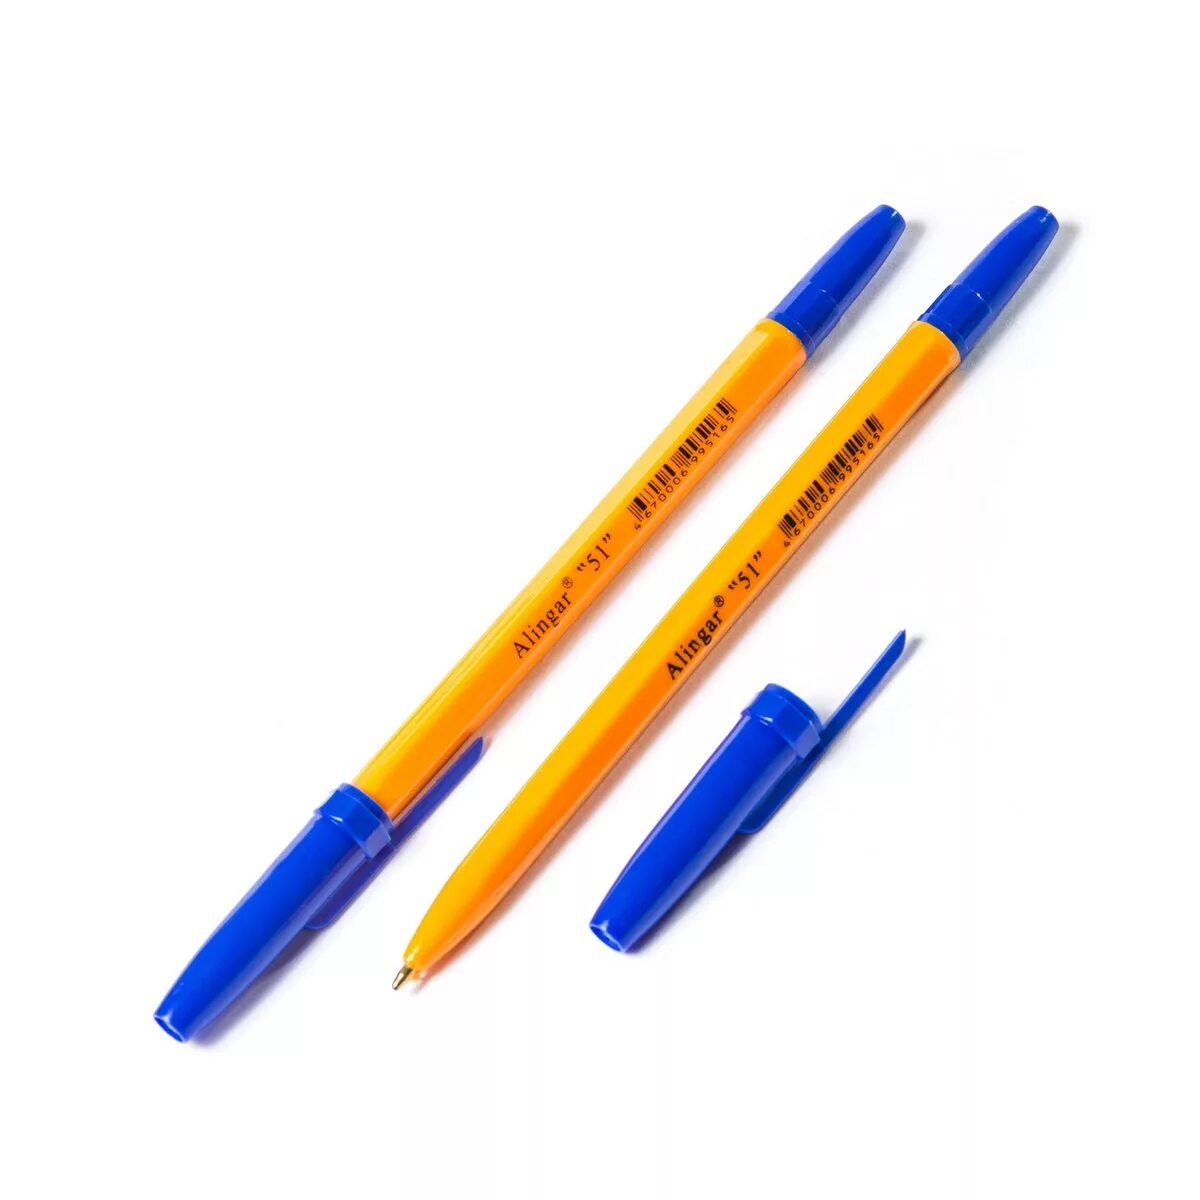 Ручка шариковая синяя 1 мм. Ручка ALINGAR 51. Ручка шариковая ALINGAR "51" синяя, оранжевый корпус 1.0мм/al51. Ручка шариковая ALINGAR 51. Ручка шариковая Corvina 51 синяя.